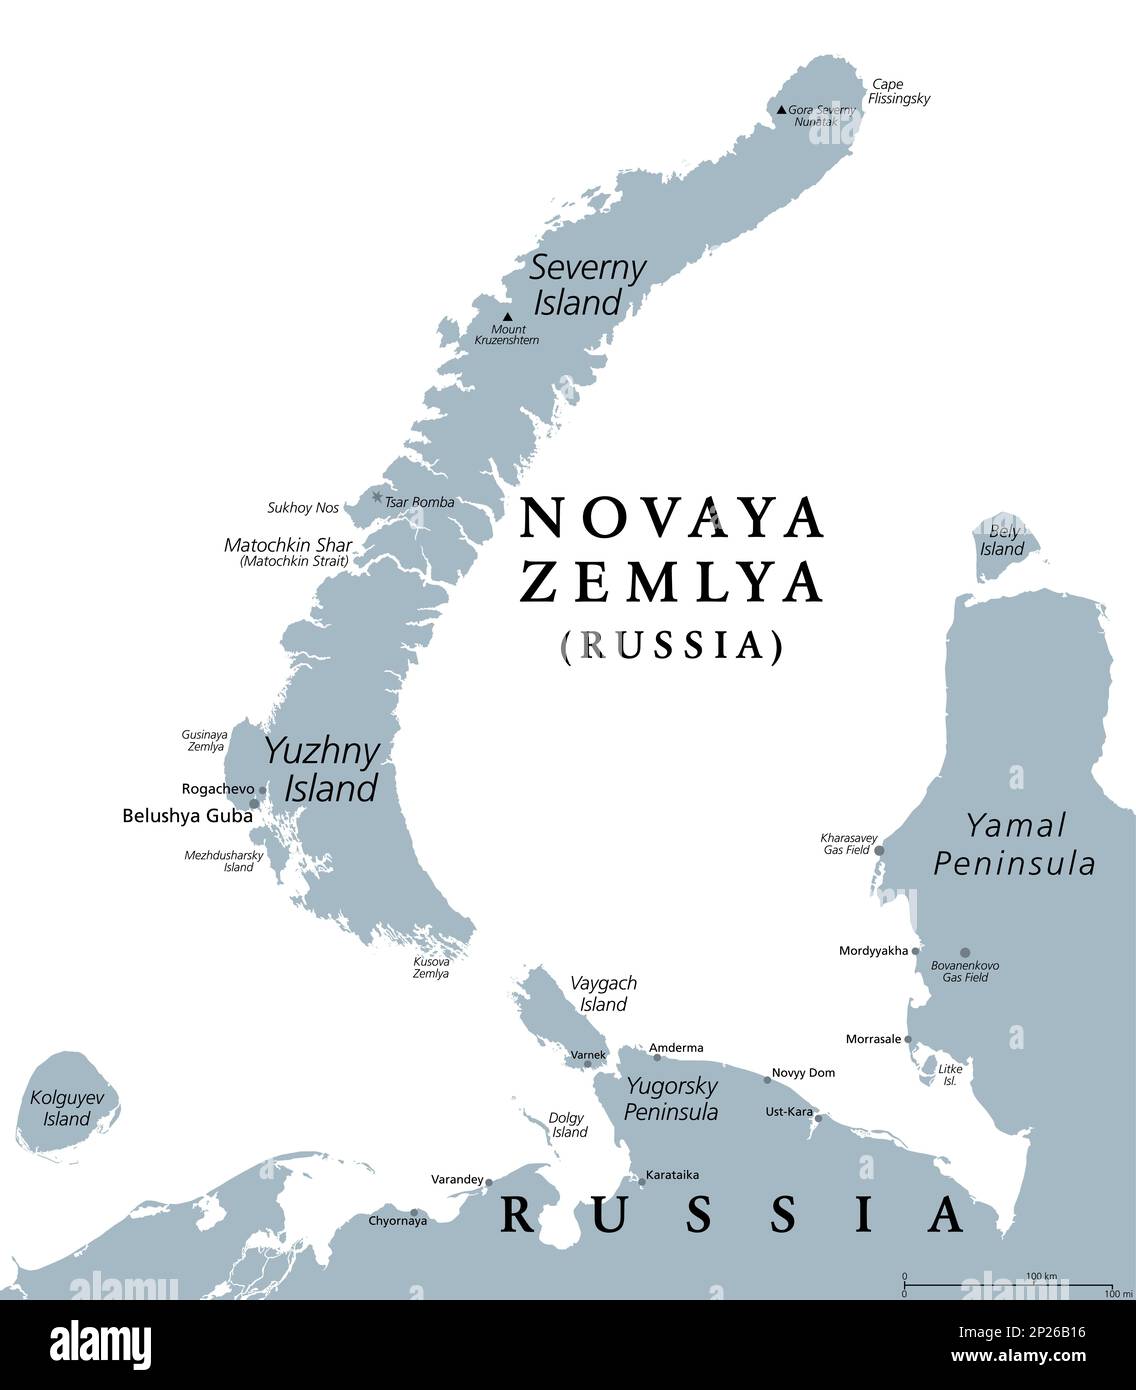 Novaya Zemlya, arcipelago nella Russia settentrionale, mappa politica grigia. Situato nell'Oceano Artico, composto da Severny Island e Yuzhny Island. Foto Stock